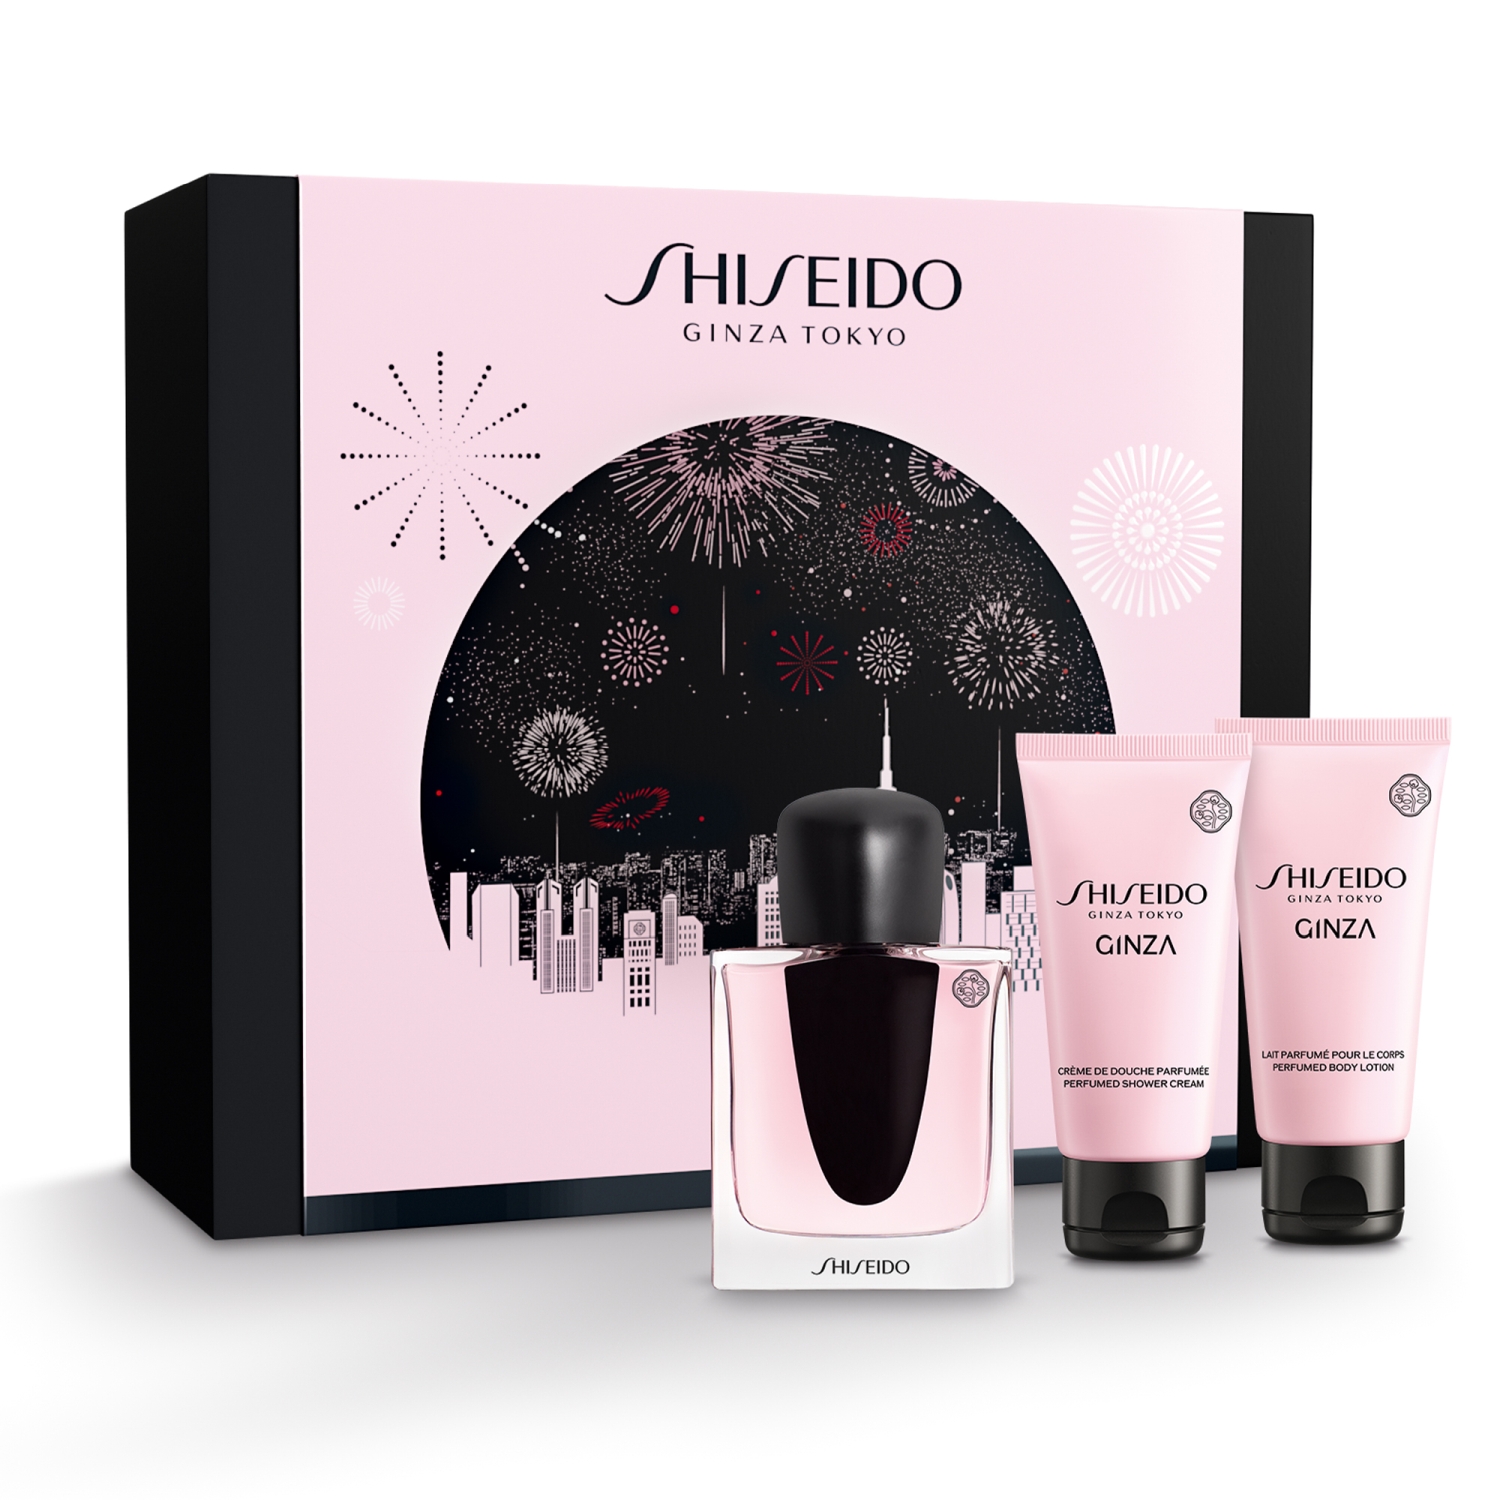 Shiseido Ginza Zestaw podarunkowy, Woda perfumowana 50ml + Żel pod prysznic 50ml + Balsam do ciała 50ml